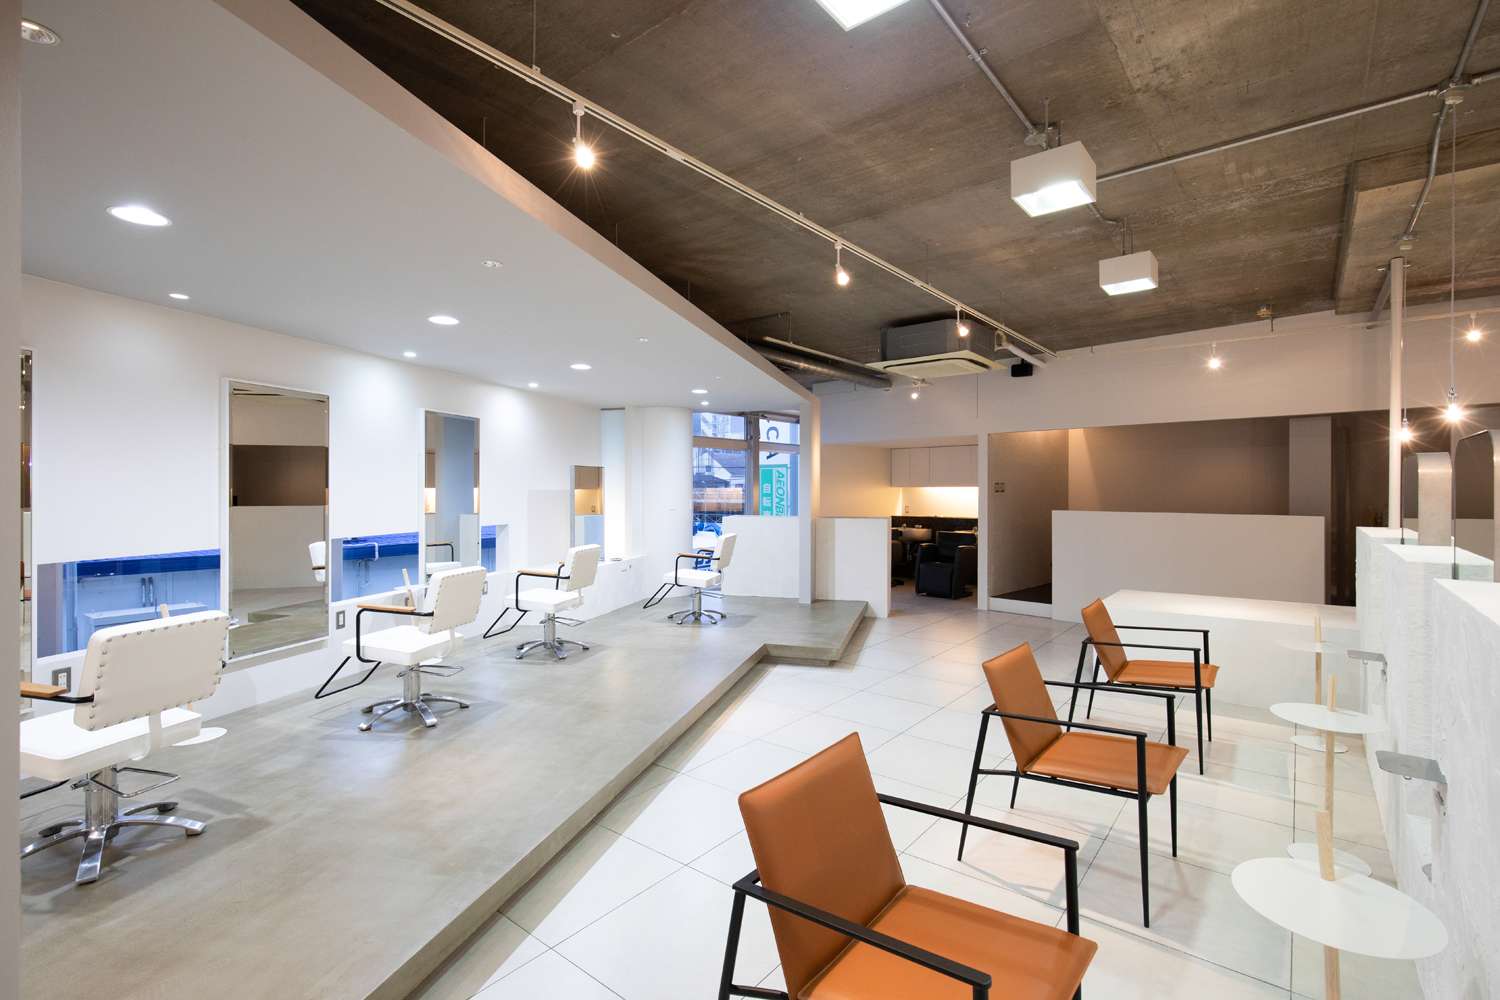 福岡市で建築家がデザインするおしゃれで快適なオフィスデザインや内装デザイン、店舗設計はasazu design office